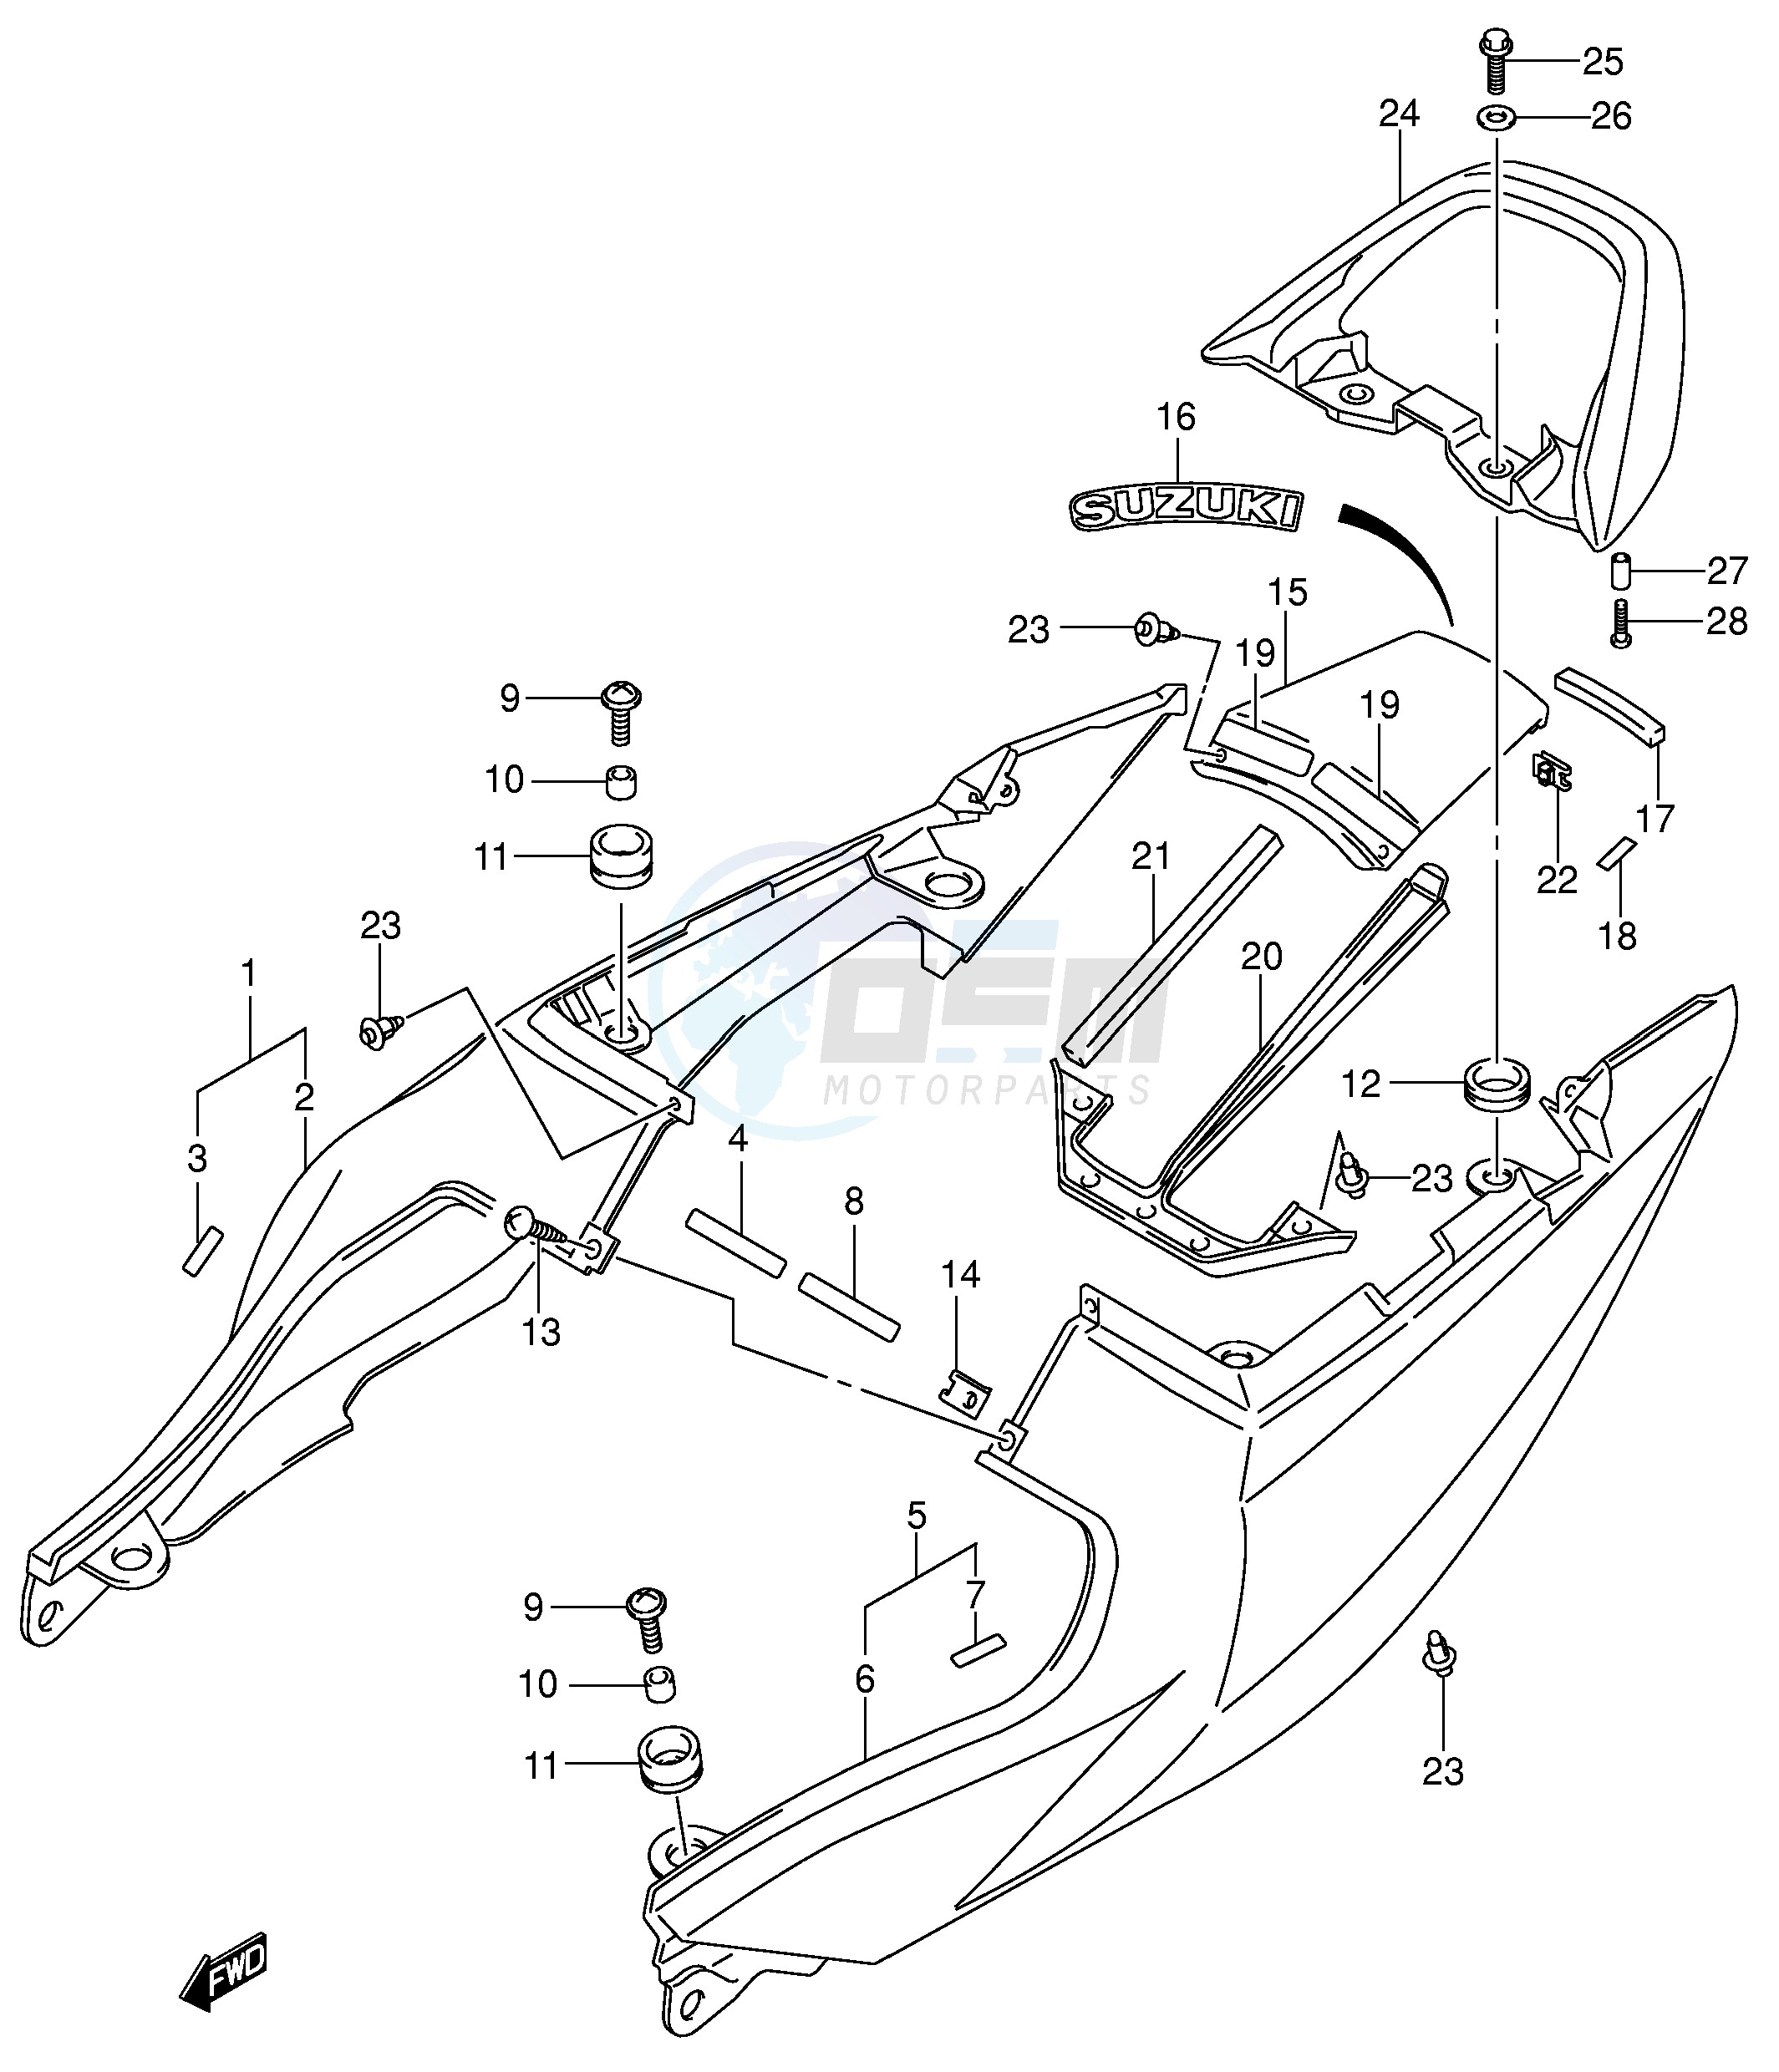 SEAT TAIL COVER (SV650SK3 SUK3) blueprint